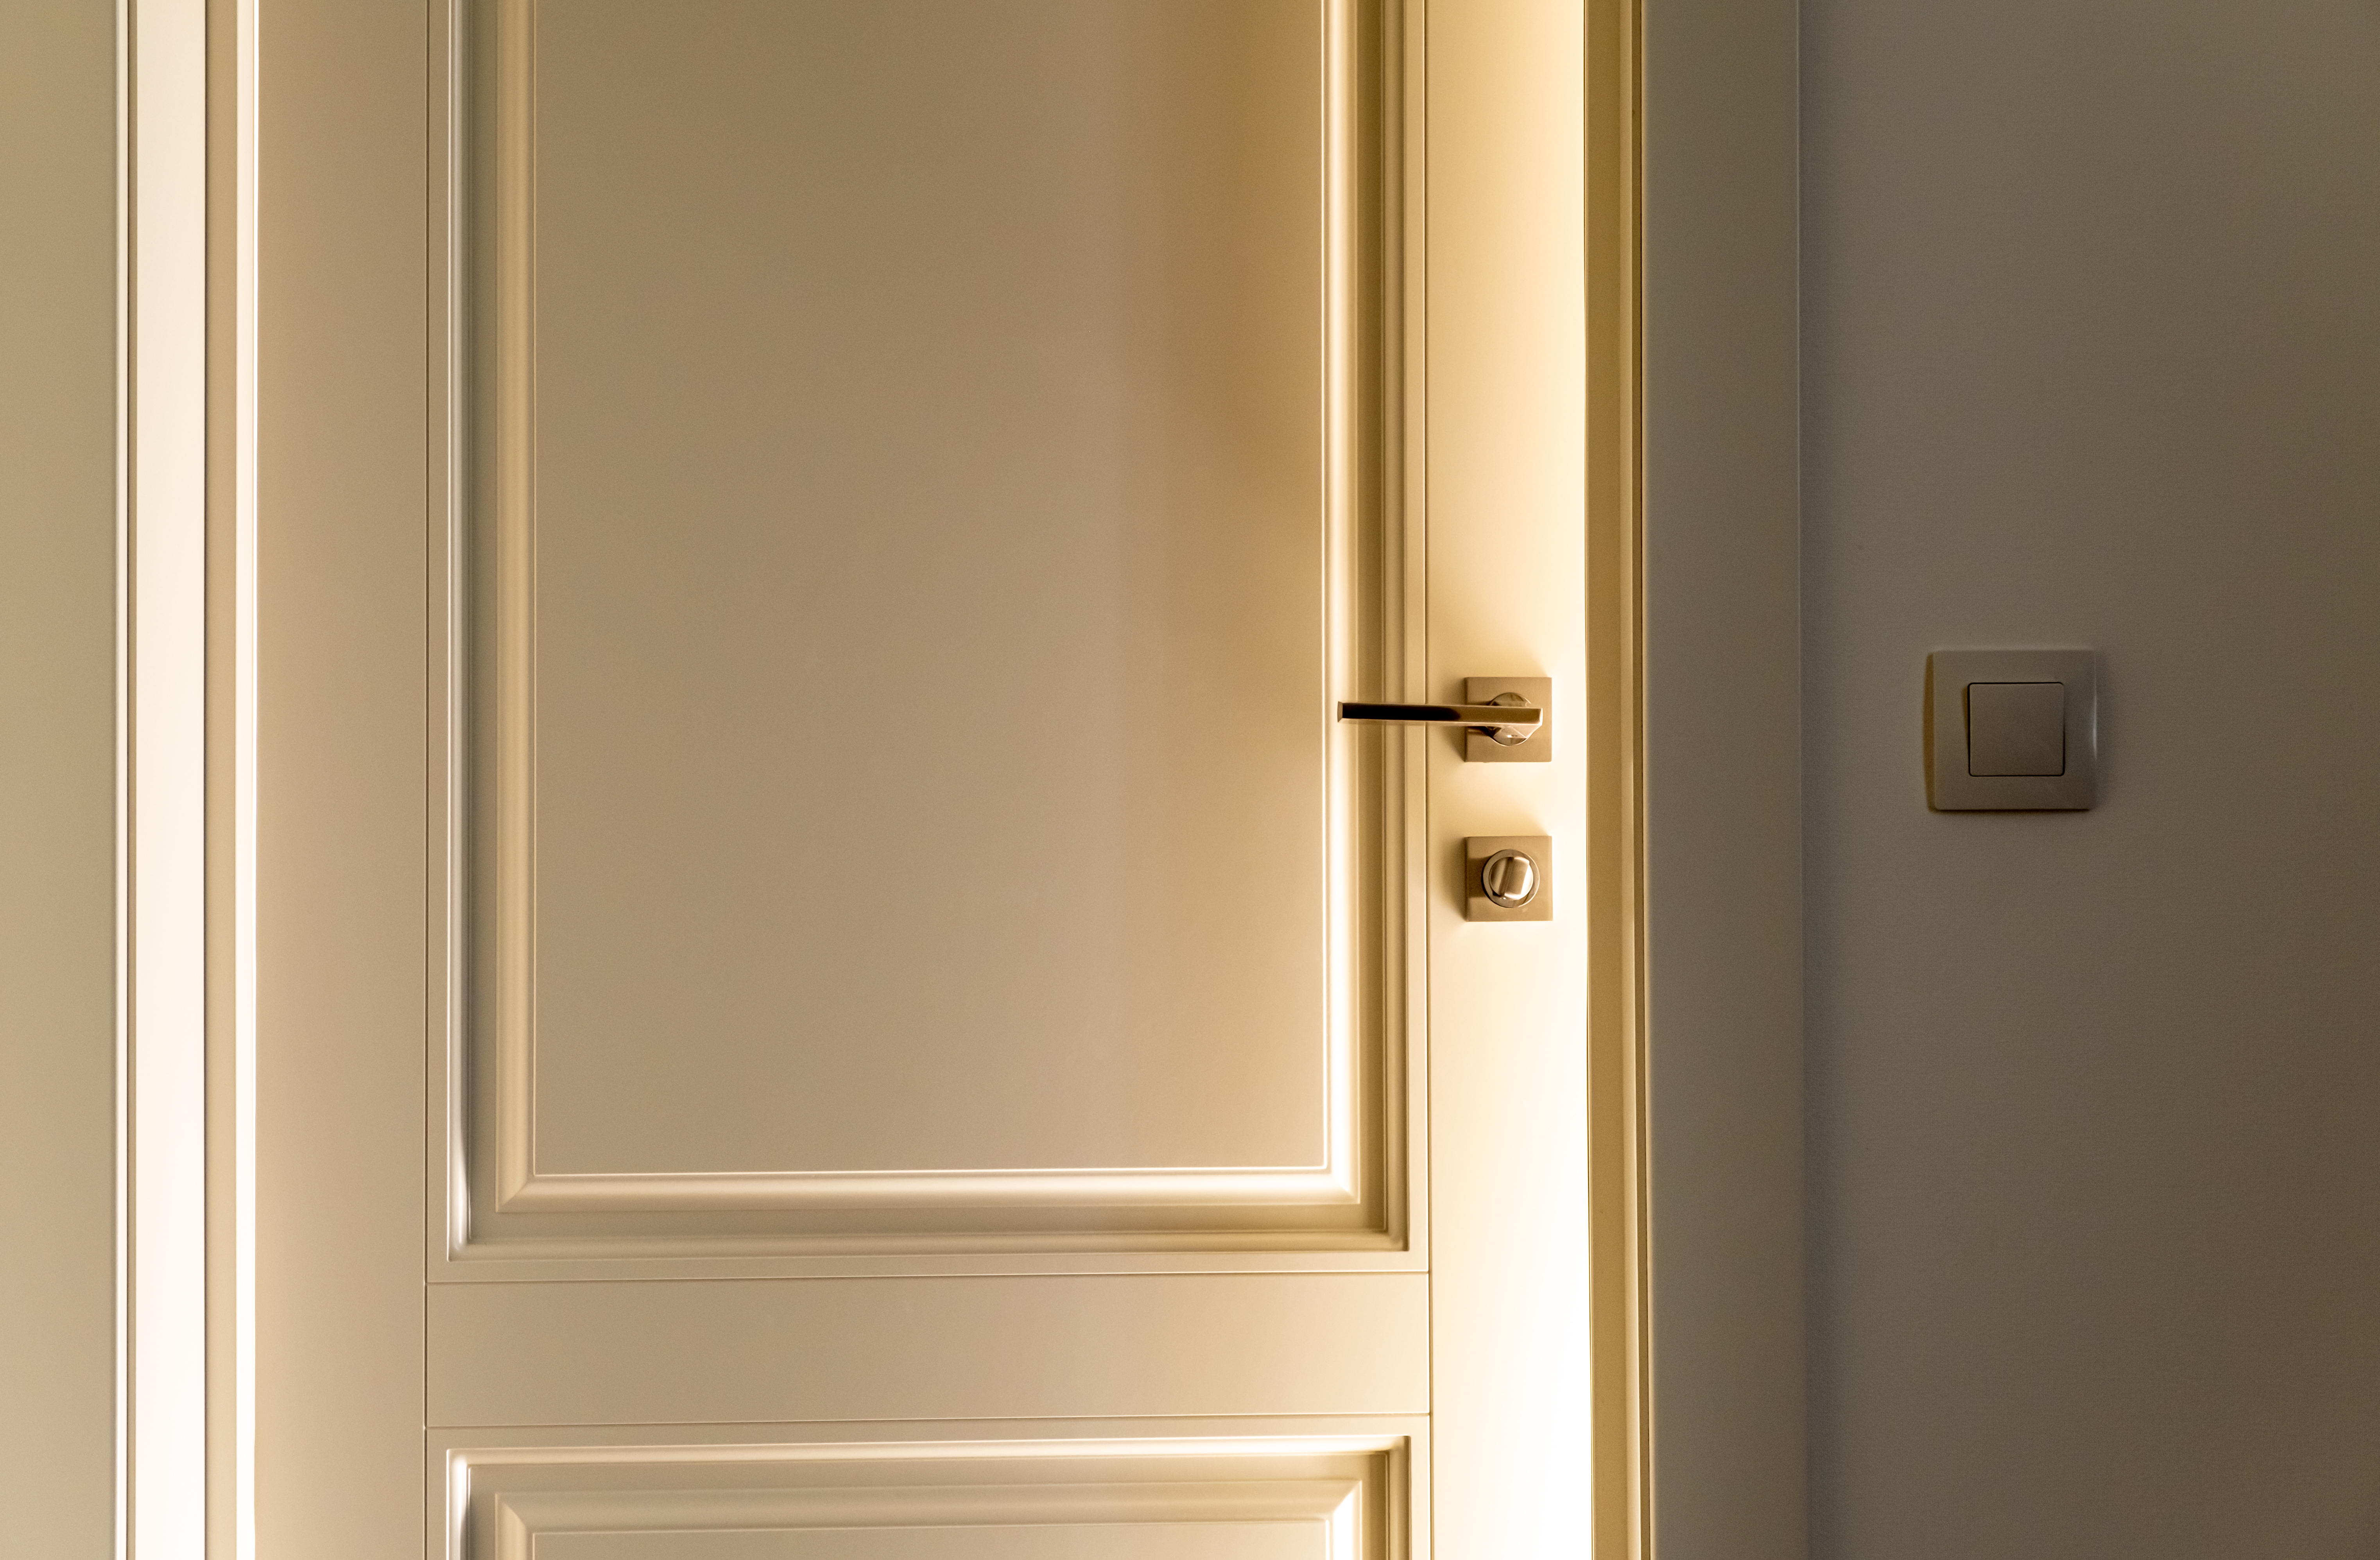 A slightly open door | Source: Shutterstock